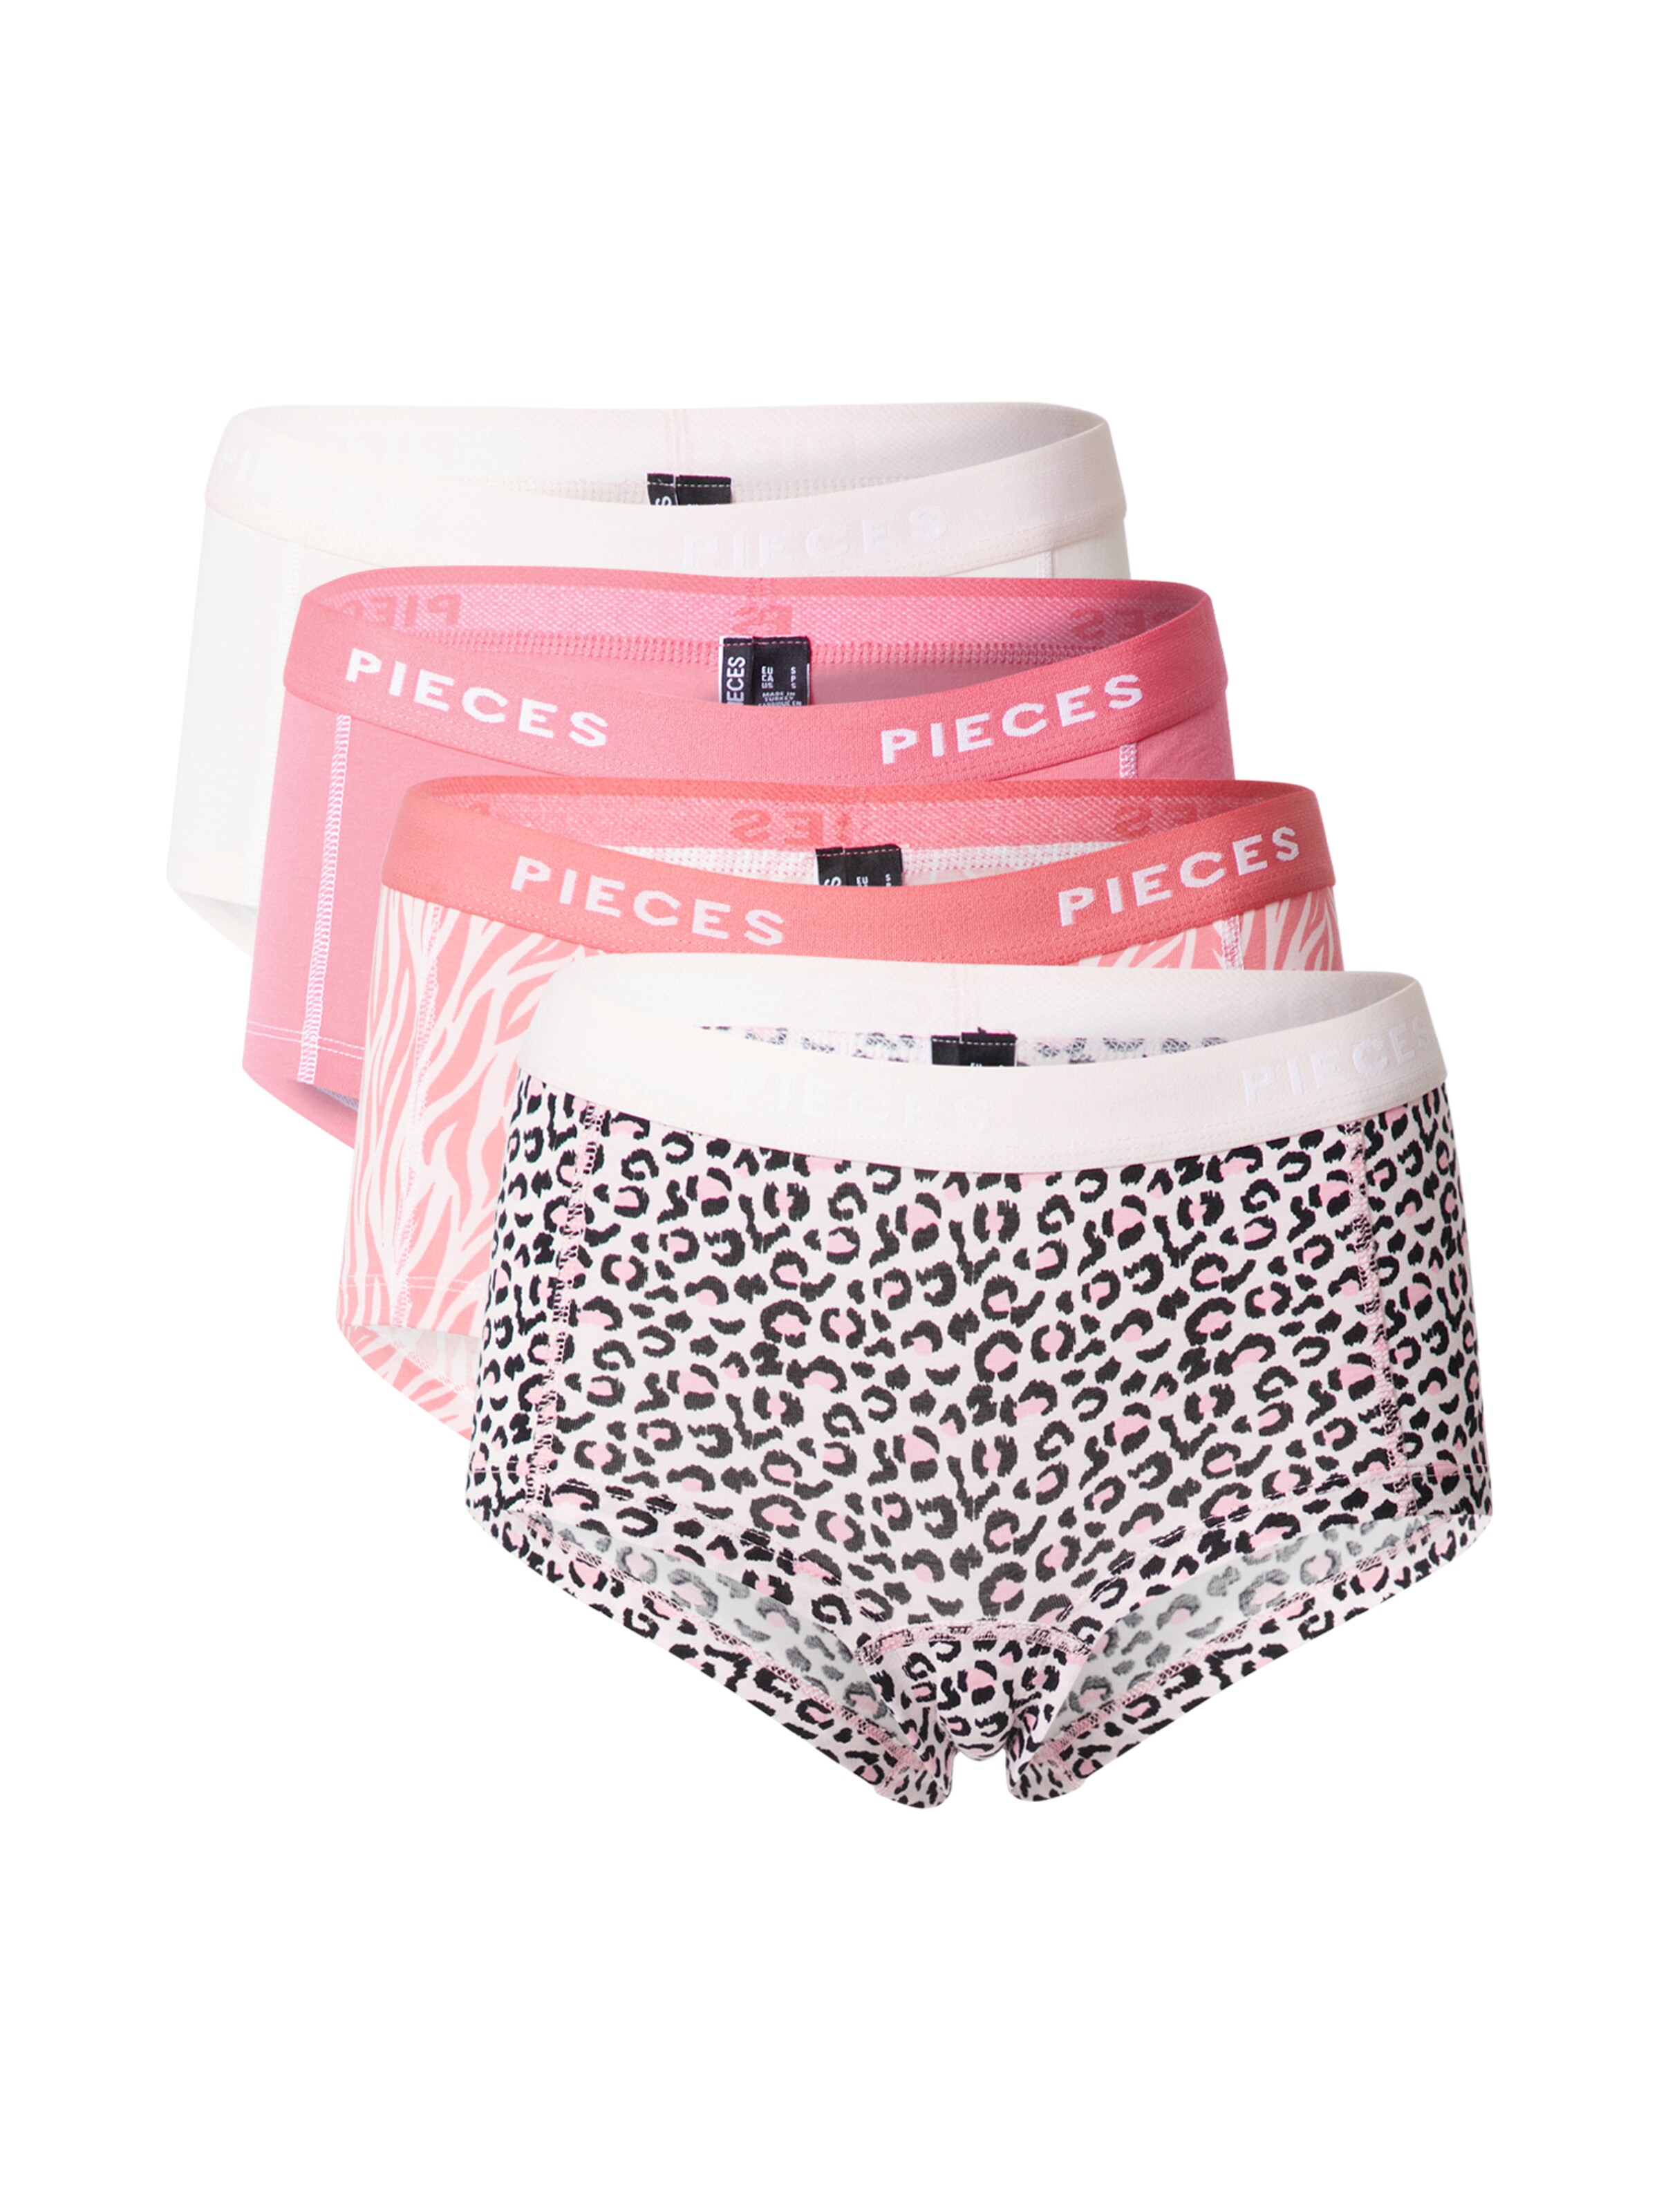 Frauen Wäsche PIECES Panty in Pink, Hellpink, Weiß - GI93409